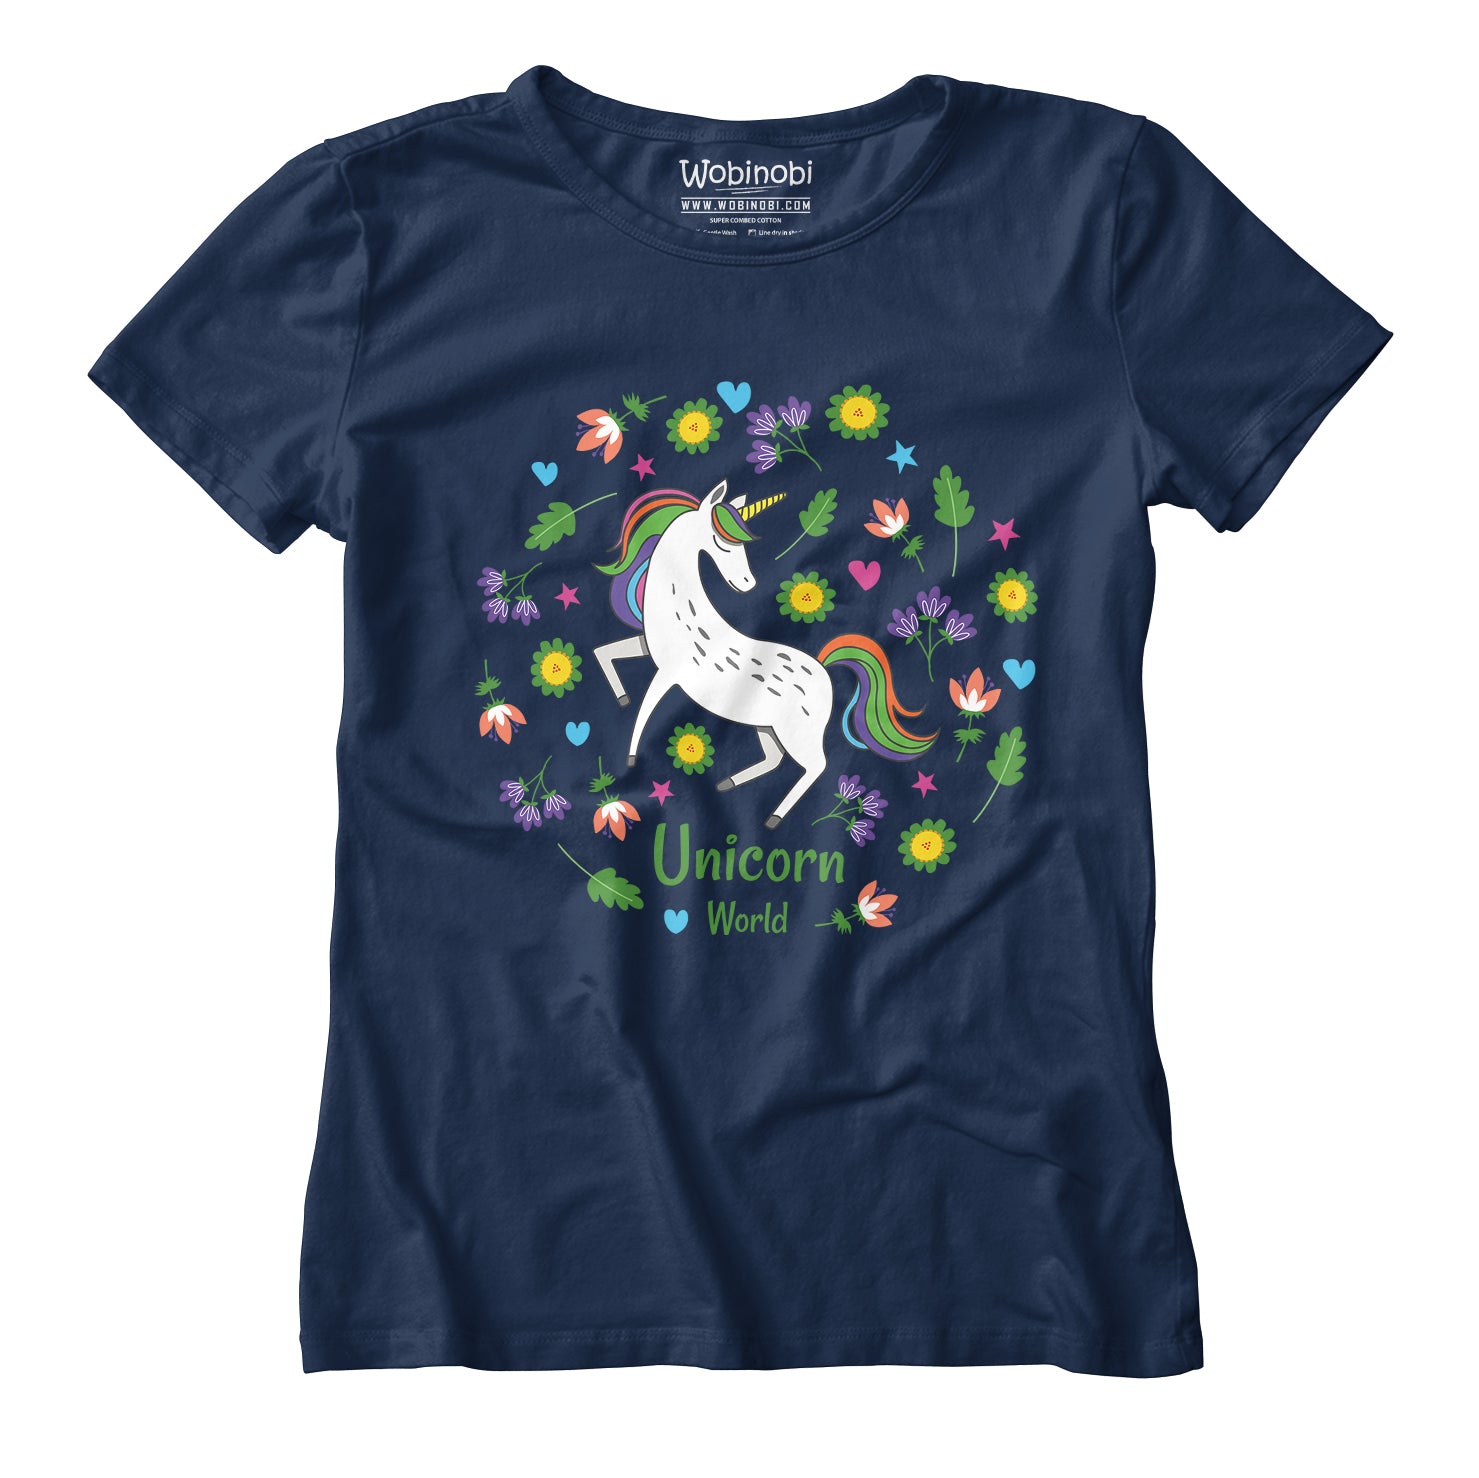 Wobinobi Unicorn World Girls T-Shirt 100% Cotton –